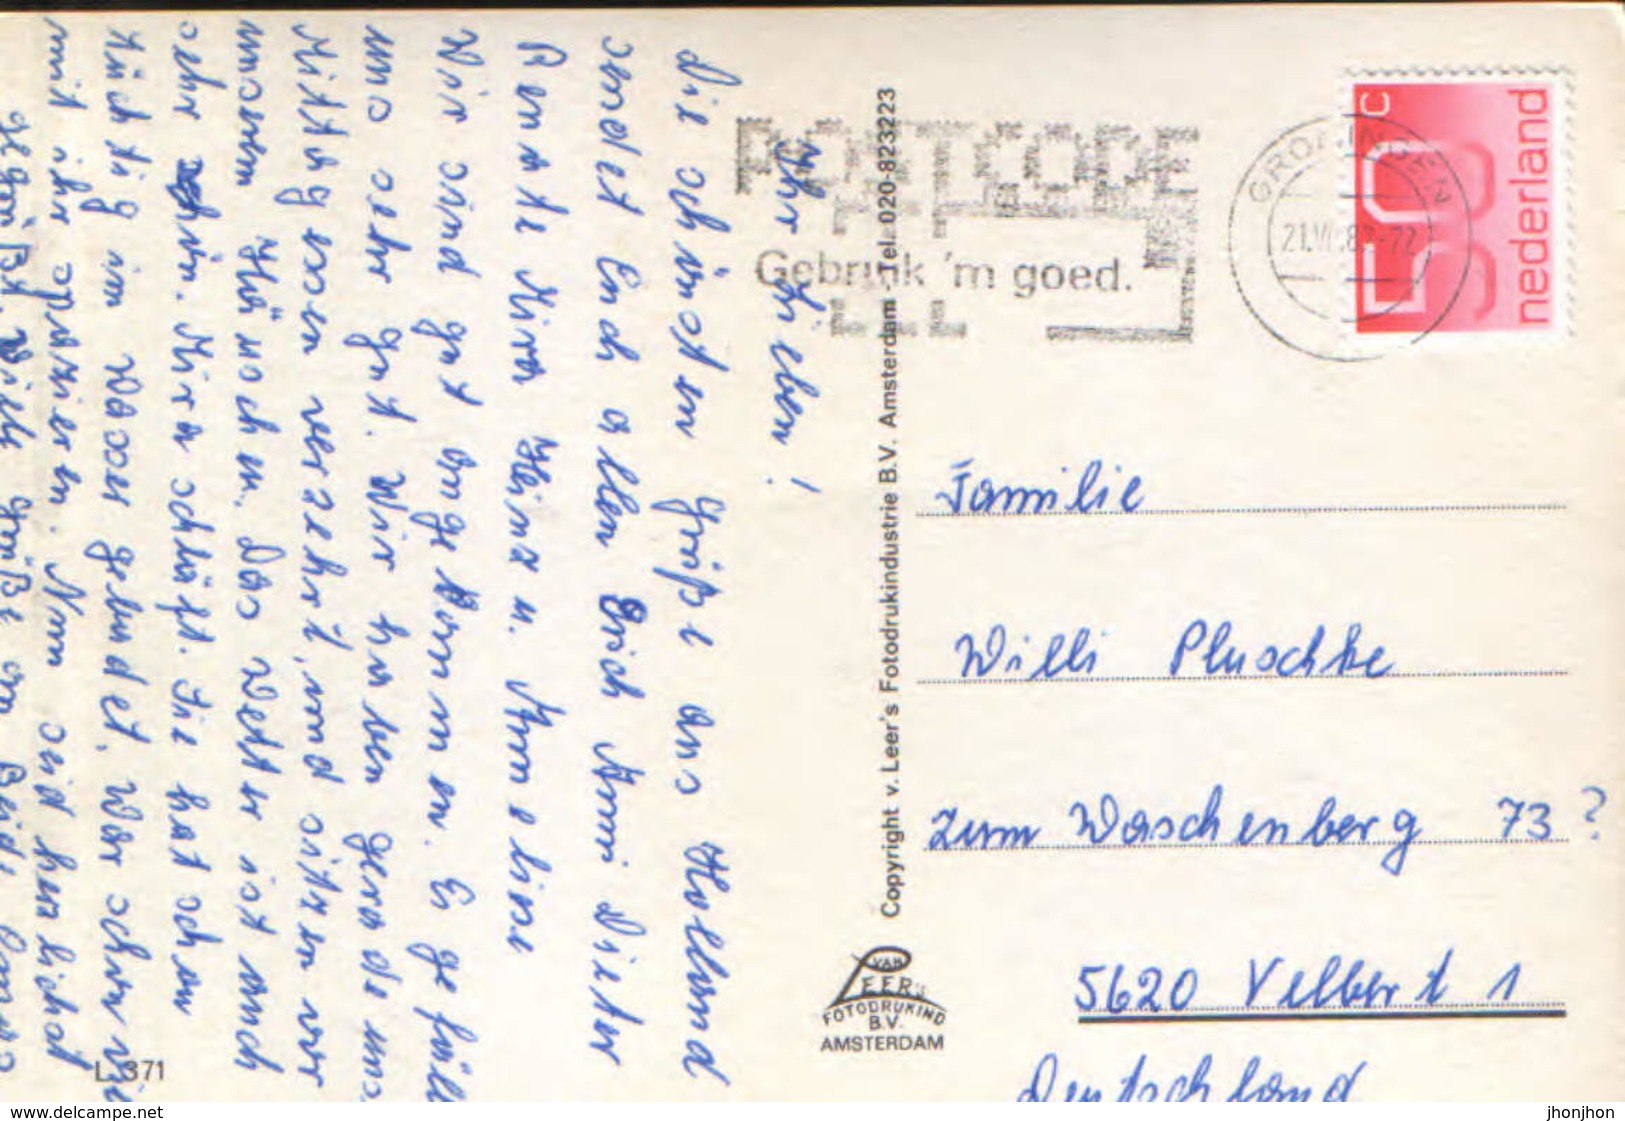 Nederland - Postcard Circulated In 1982 - Zuidlaren - Collage Of Images  - 2/scans - Zuidlaren